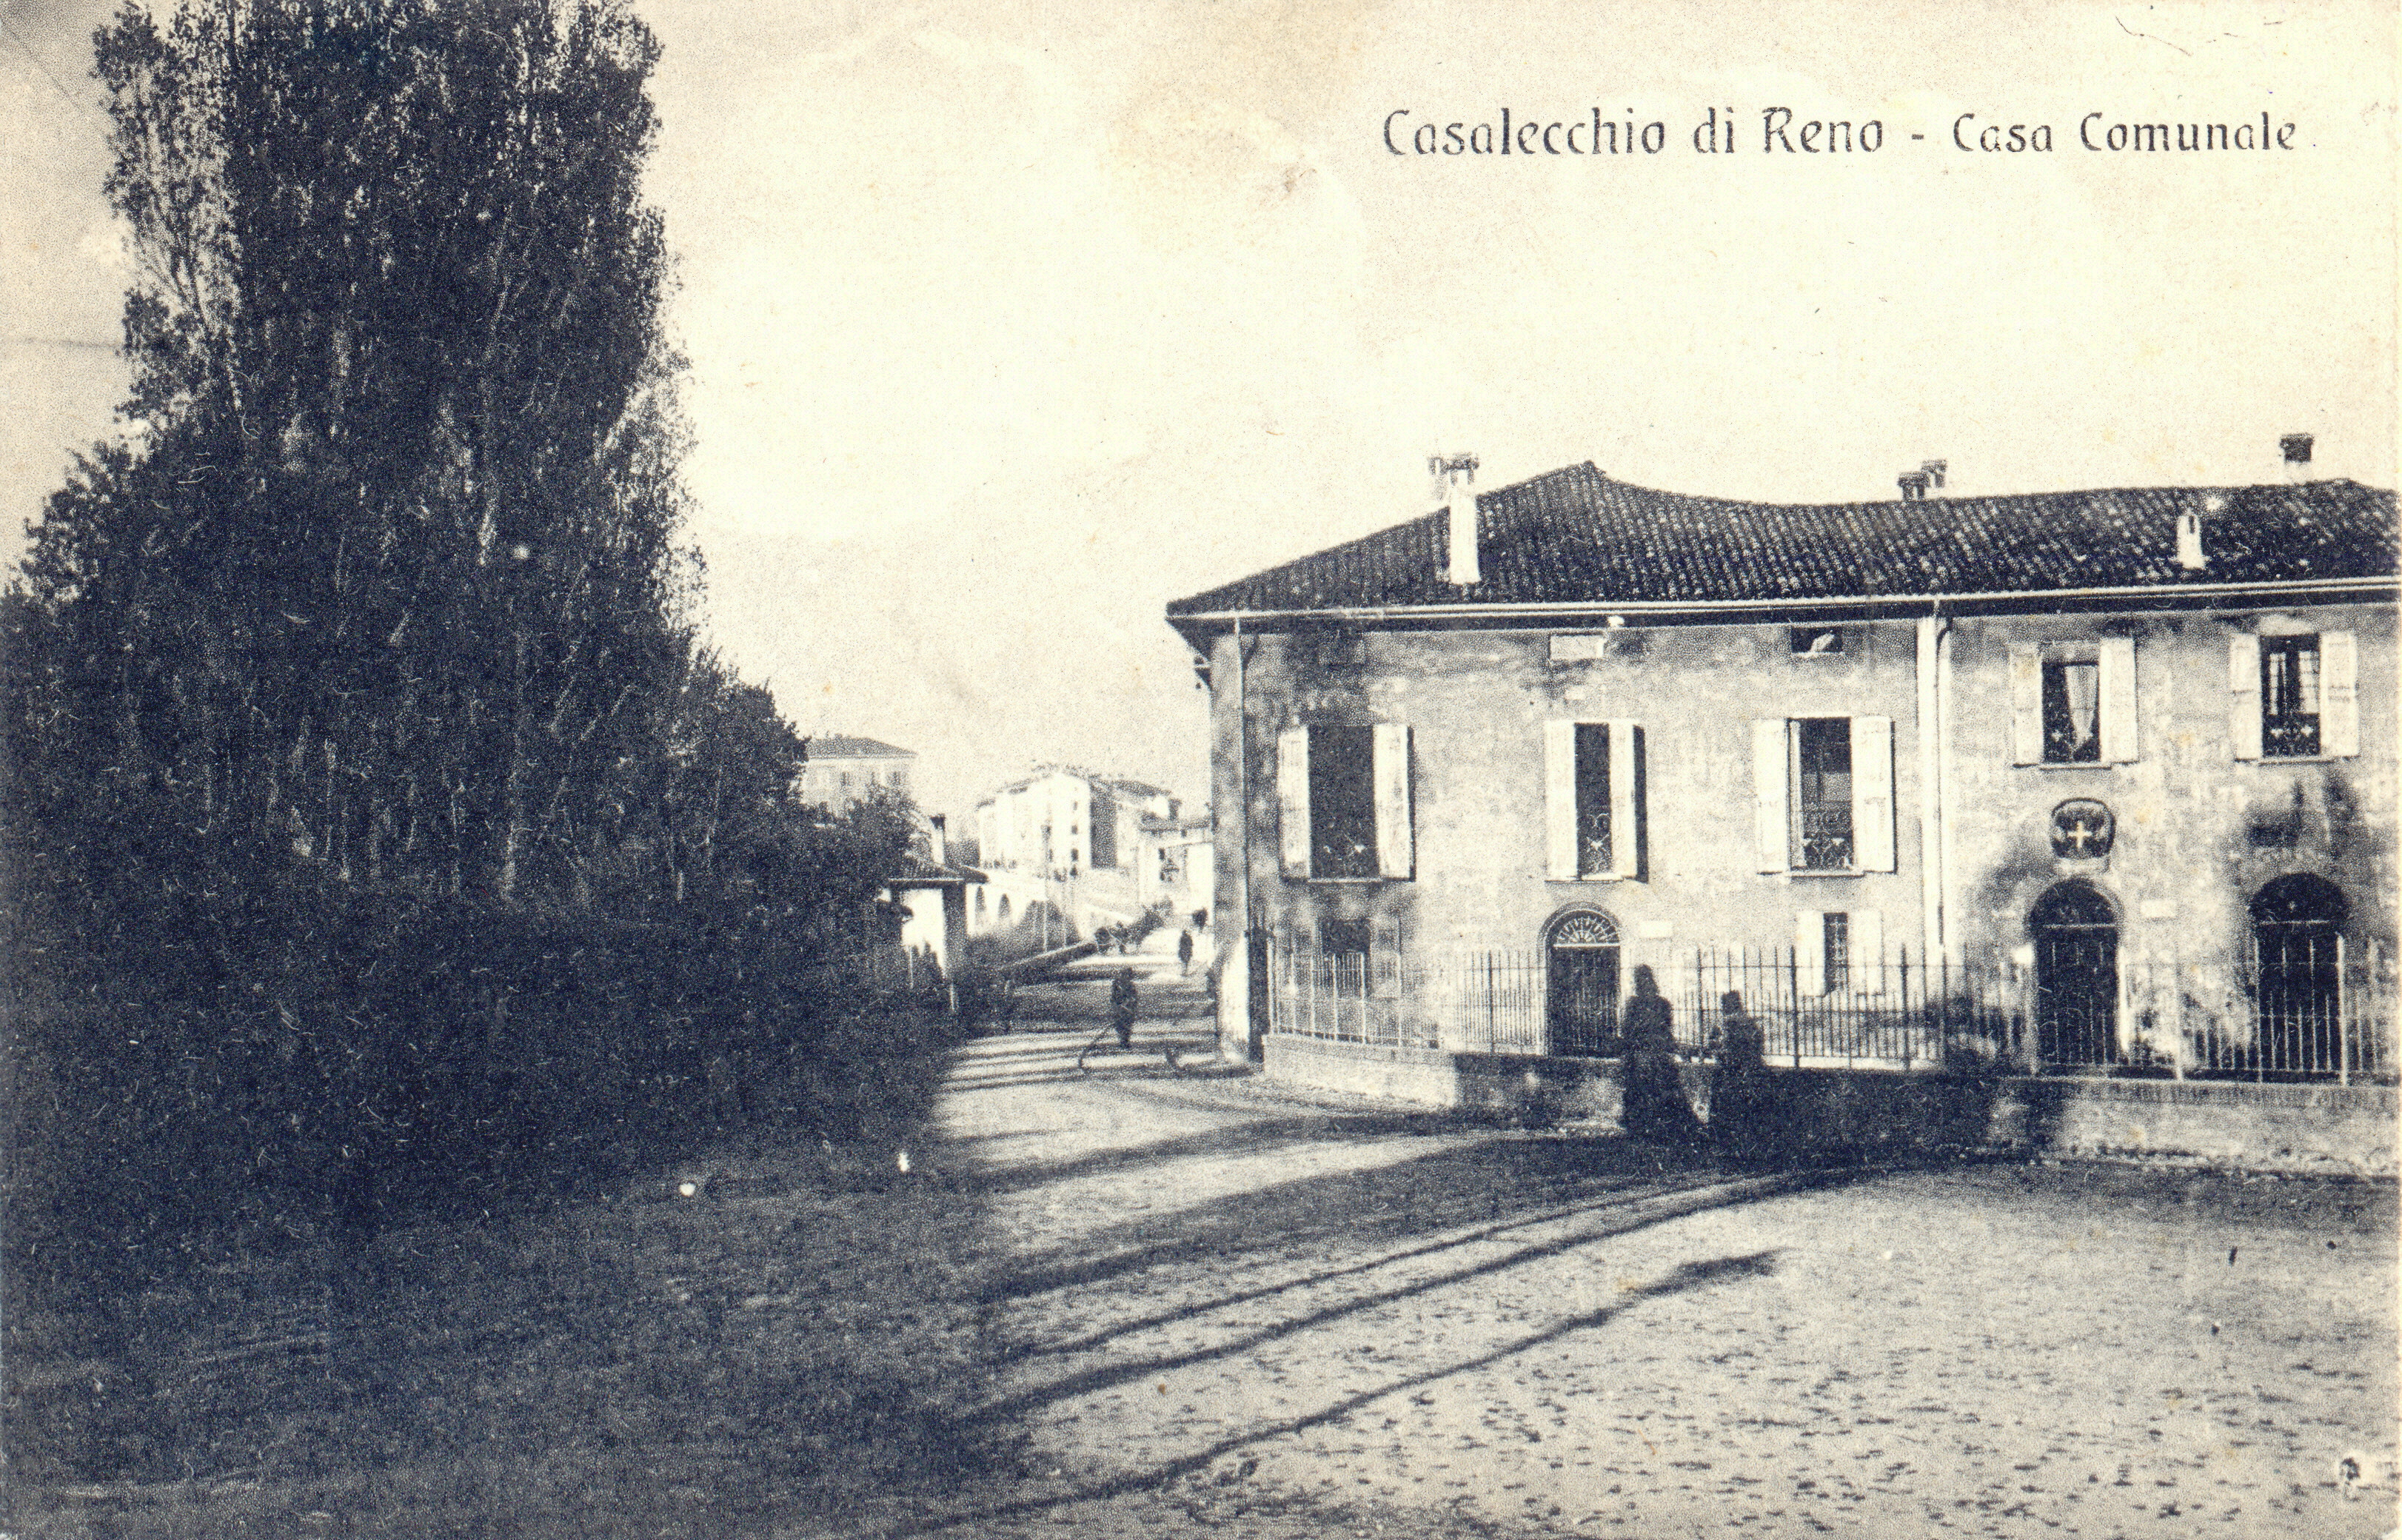 La sede municipale in una cartolina di inizio '900 (Collezione M. Neri)